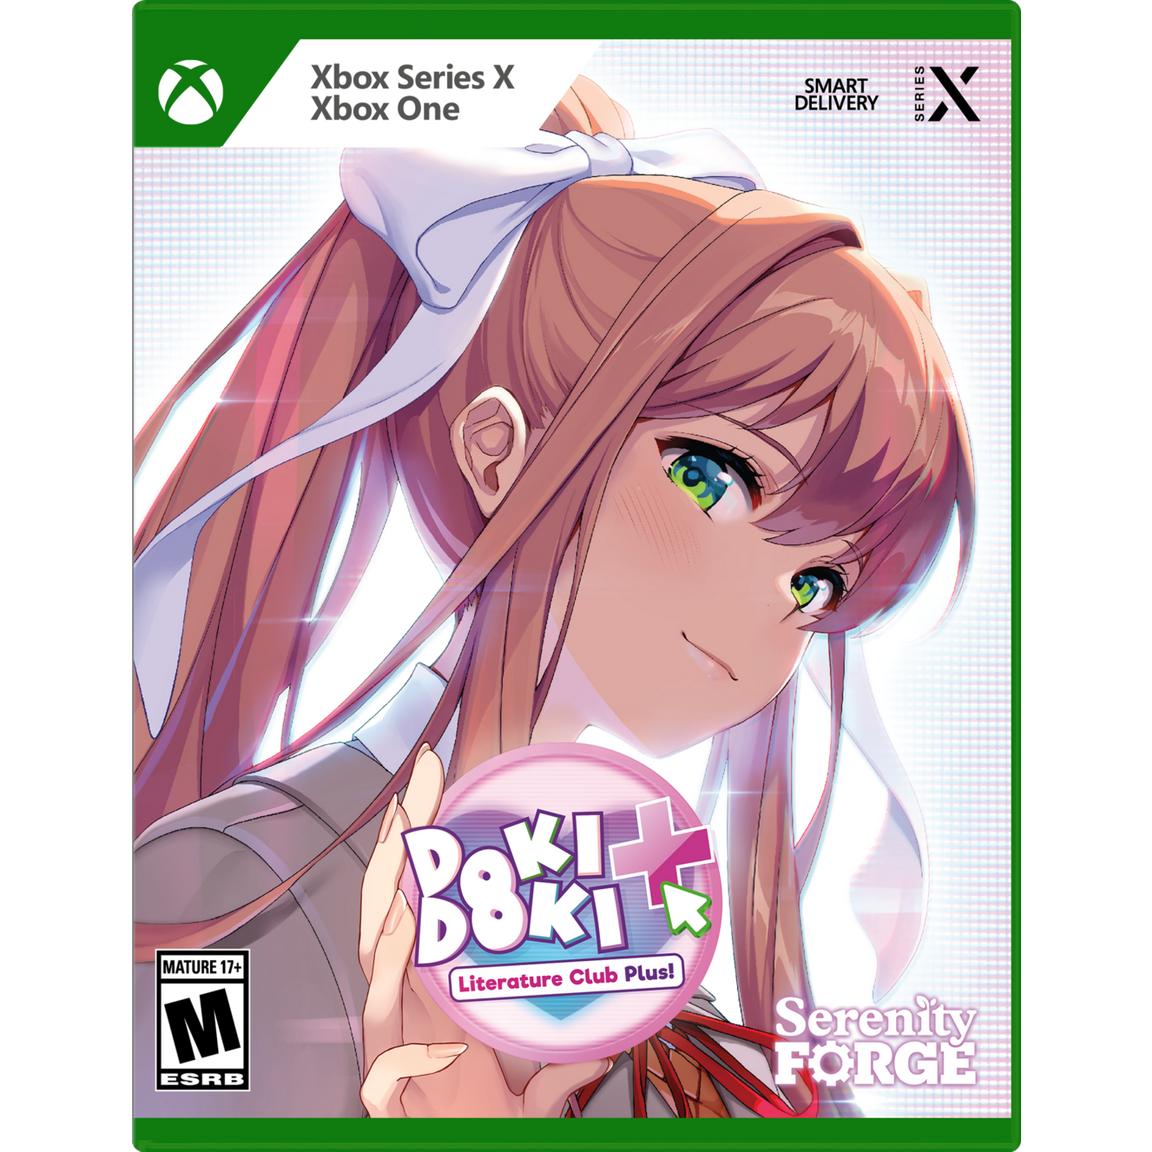 Видеоигра Doki Doki Literature Club Plus! Premium Physical Edition - Xbox Series X, Xbox One